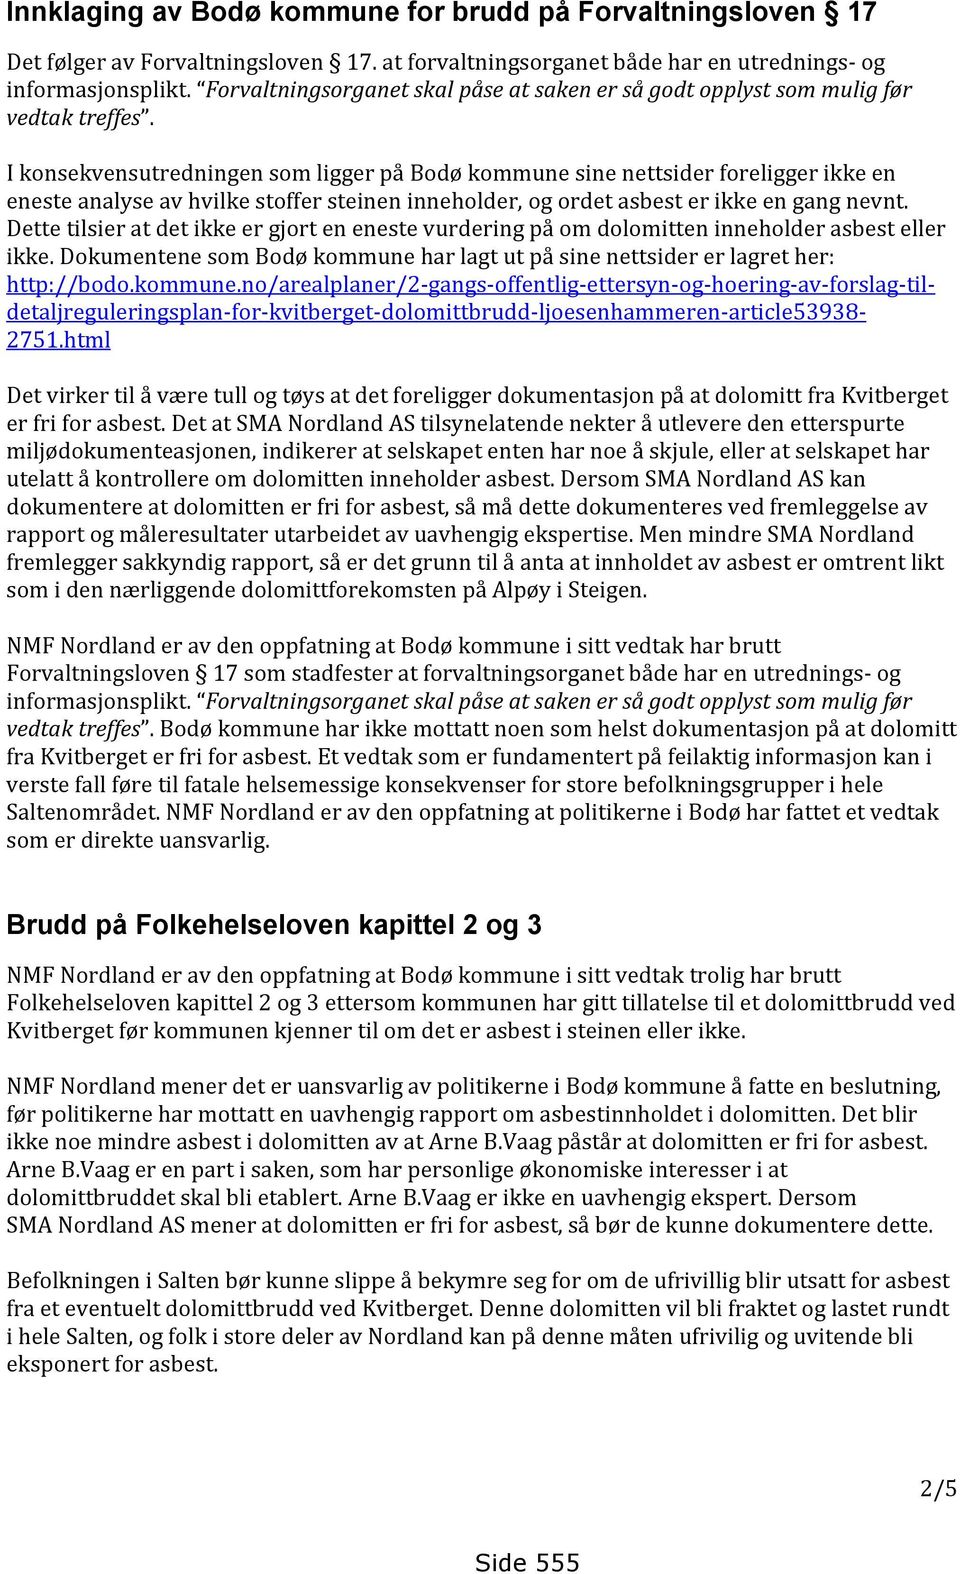 I konsekvensutredningen som ligger på Bodø kommune sine nettsider foreligger ikke en eneste analyse av hvilke stoffer steinen inneholder, og ordet asbest er ikke en gang nevnt.